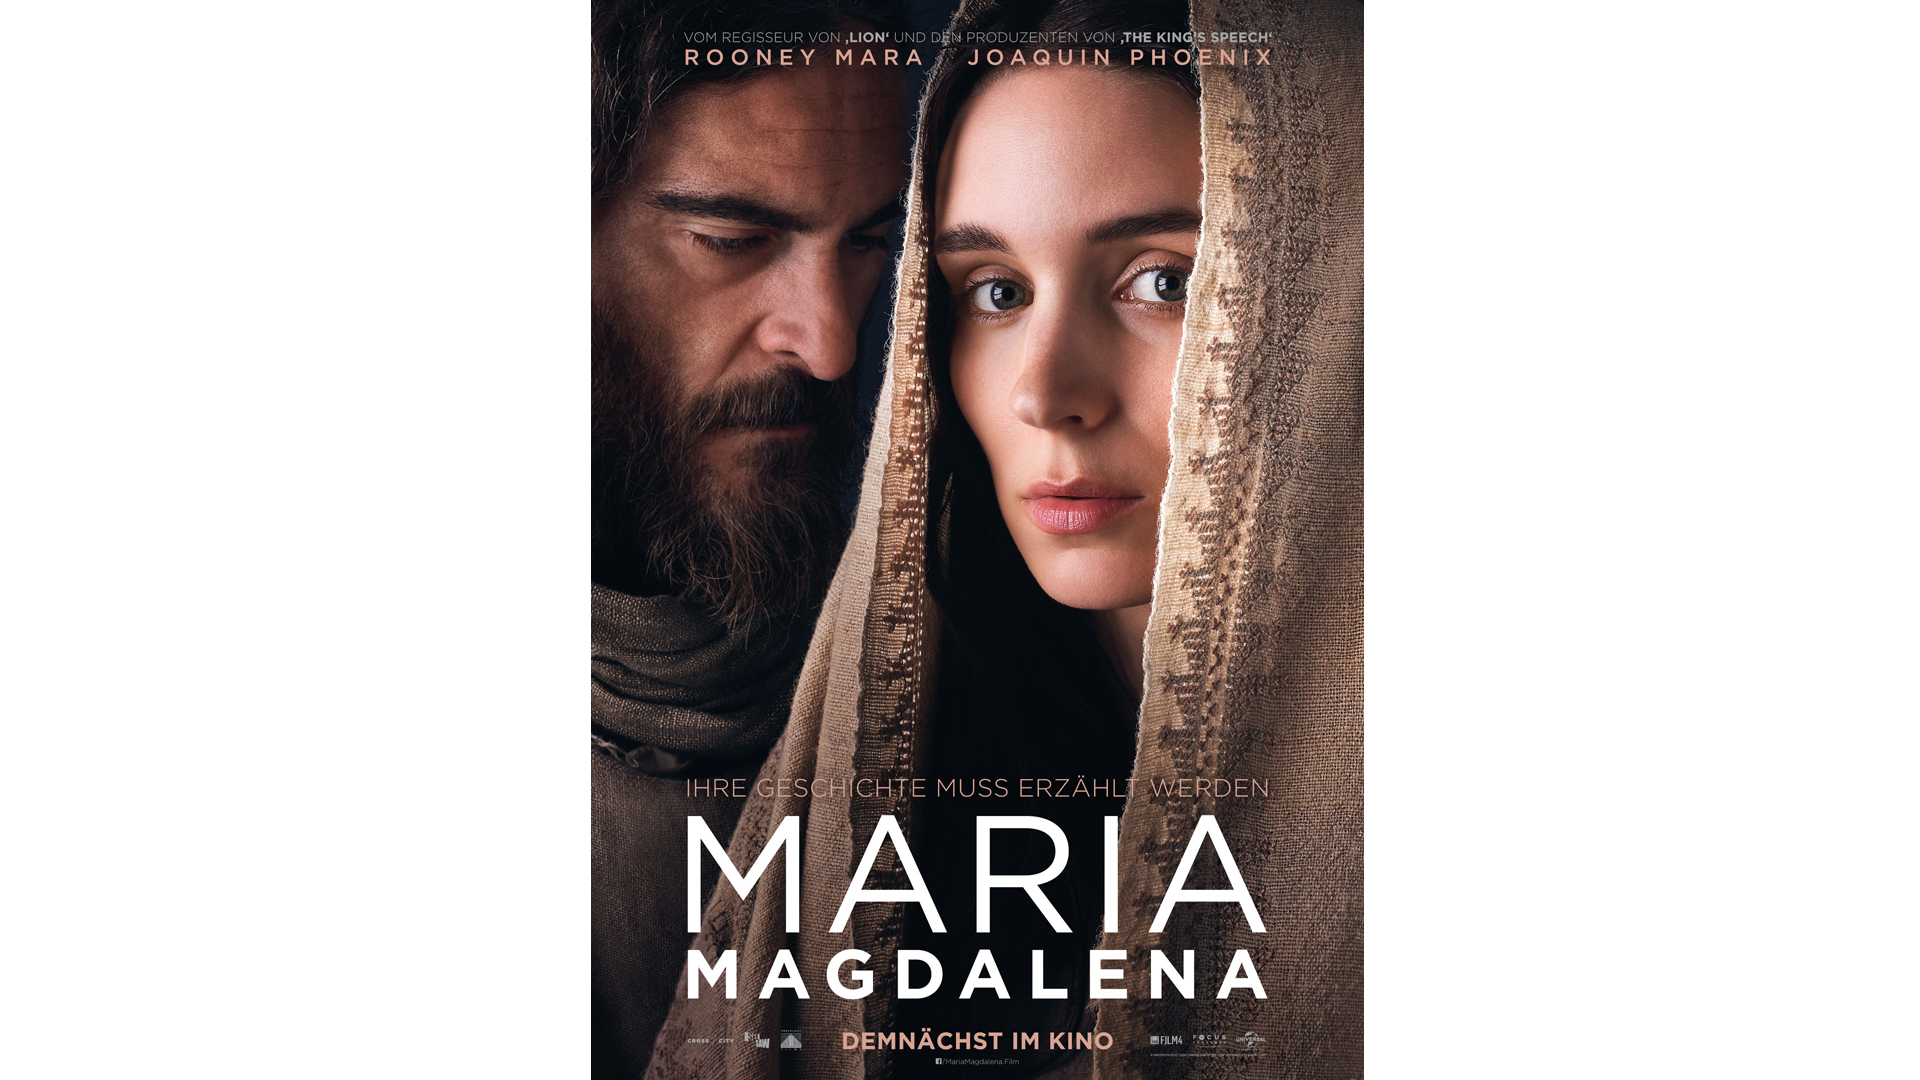 Mit Joaquin Phoenix und Rooney Mara ist der Film Maria Magdalena hochkarätig besetzt. Am 15. März läuft er an.